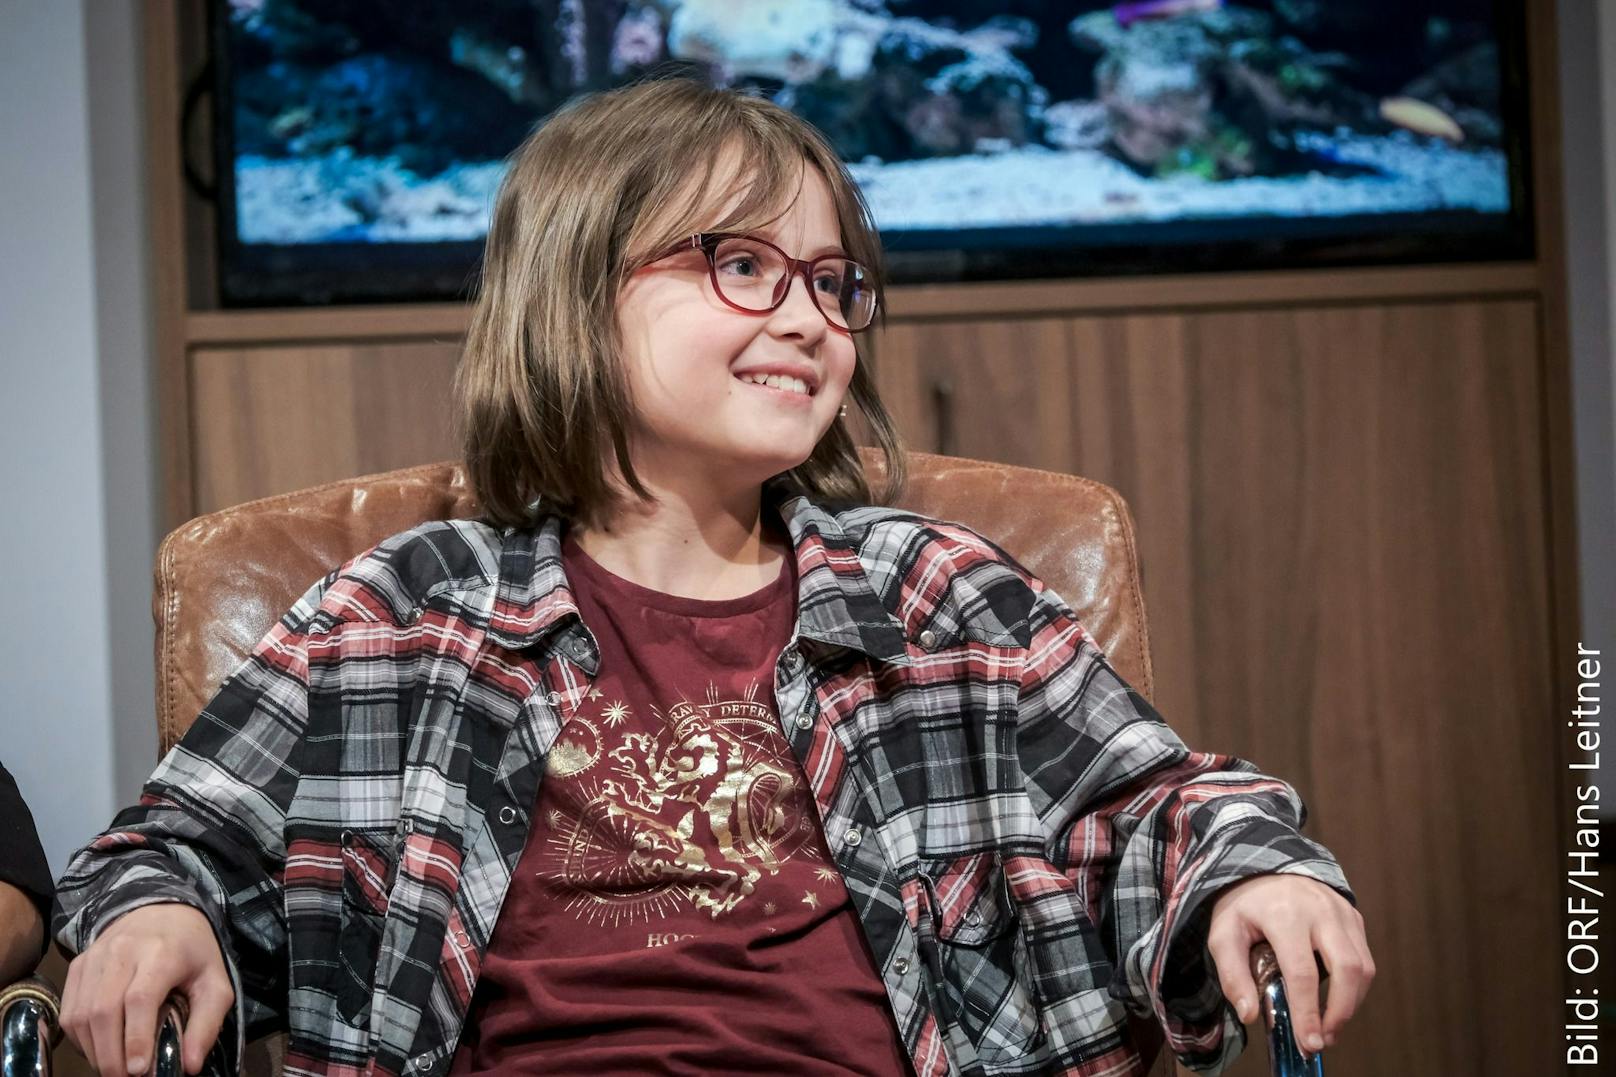 11-Jährige sorgt für Lacher im TV: "Schaue keinen ORF"